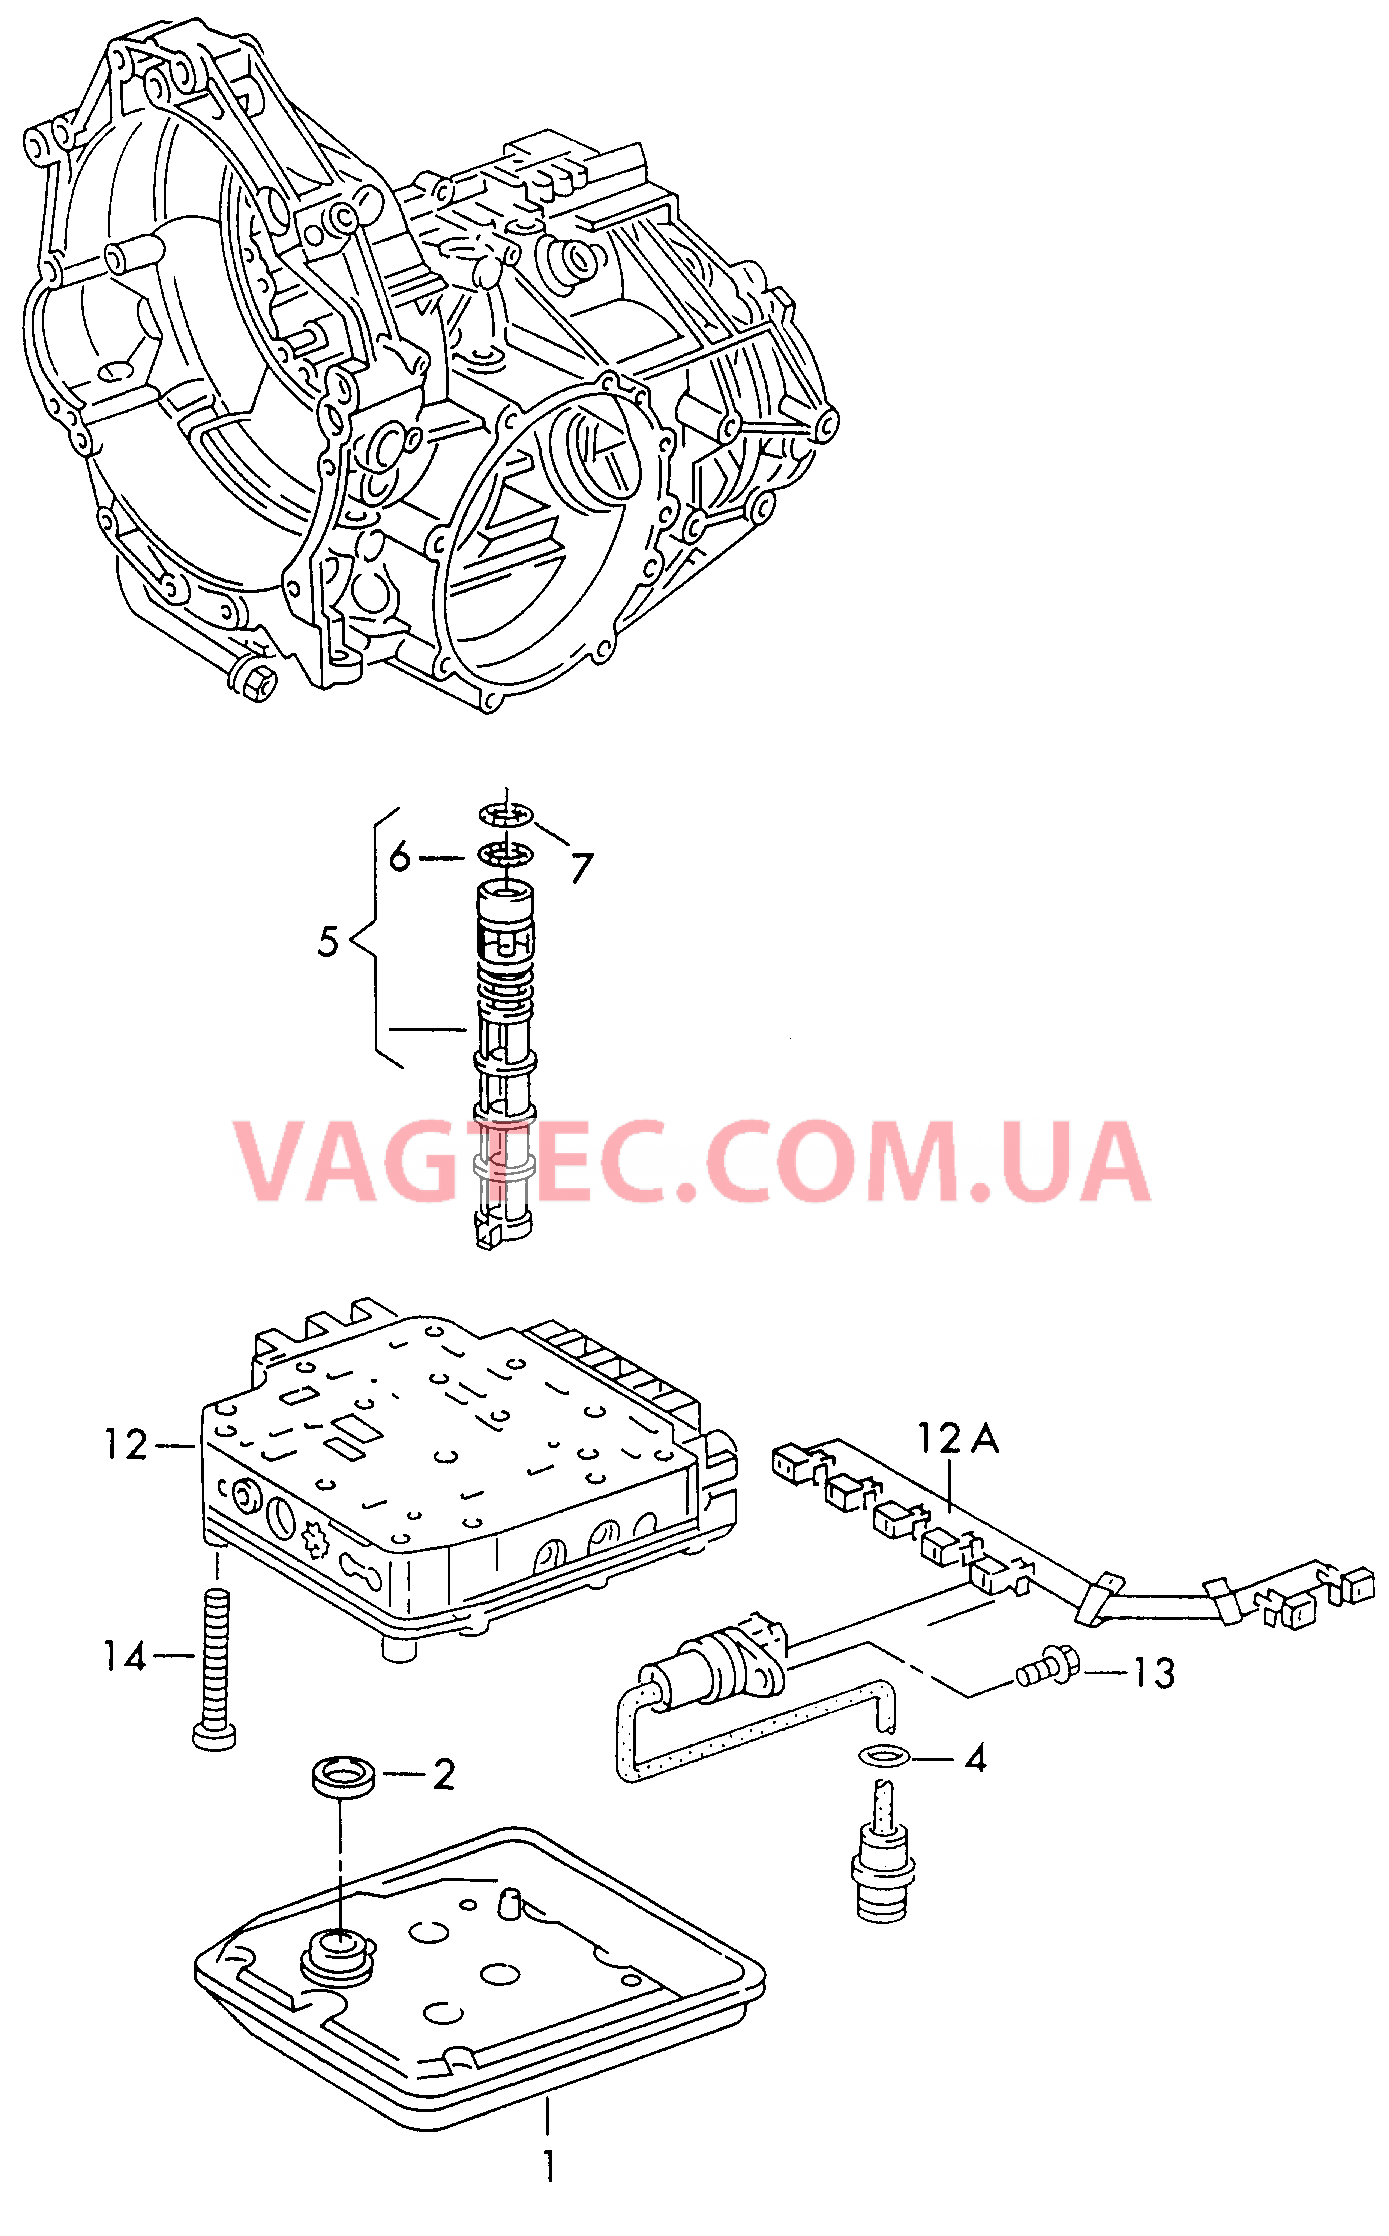 Блок клапанов АКП Фильтр масляный, сетчатый для 4-ступенчатой АКП  для VOLKSWAGEN Passat 2001